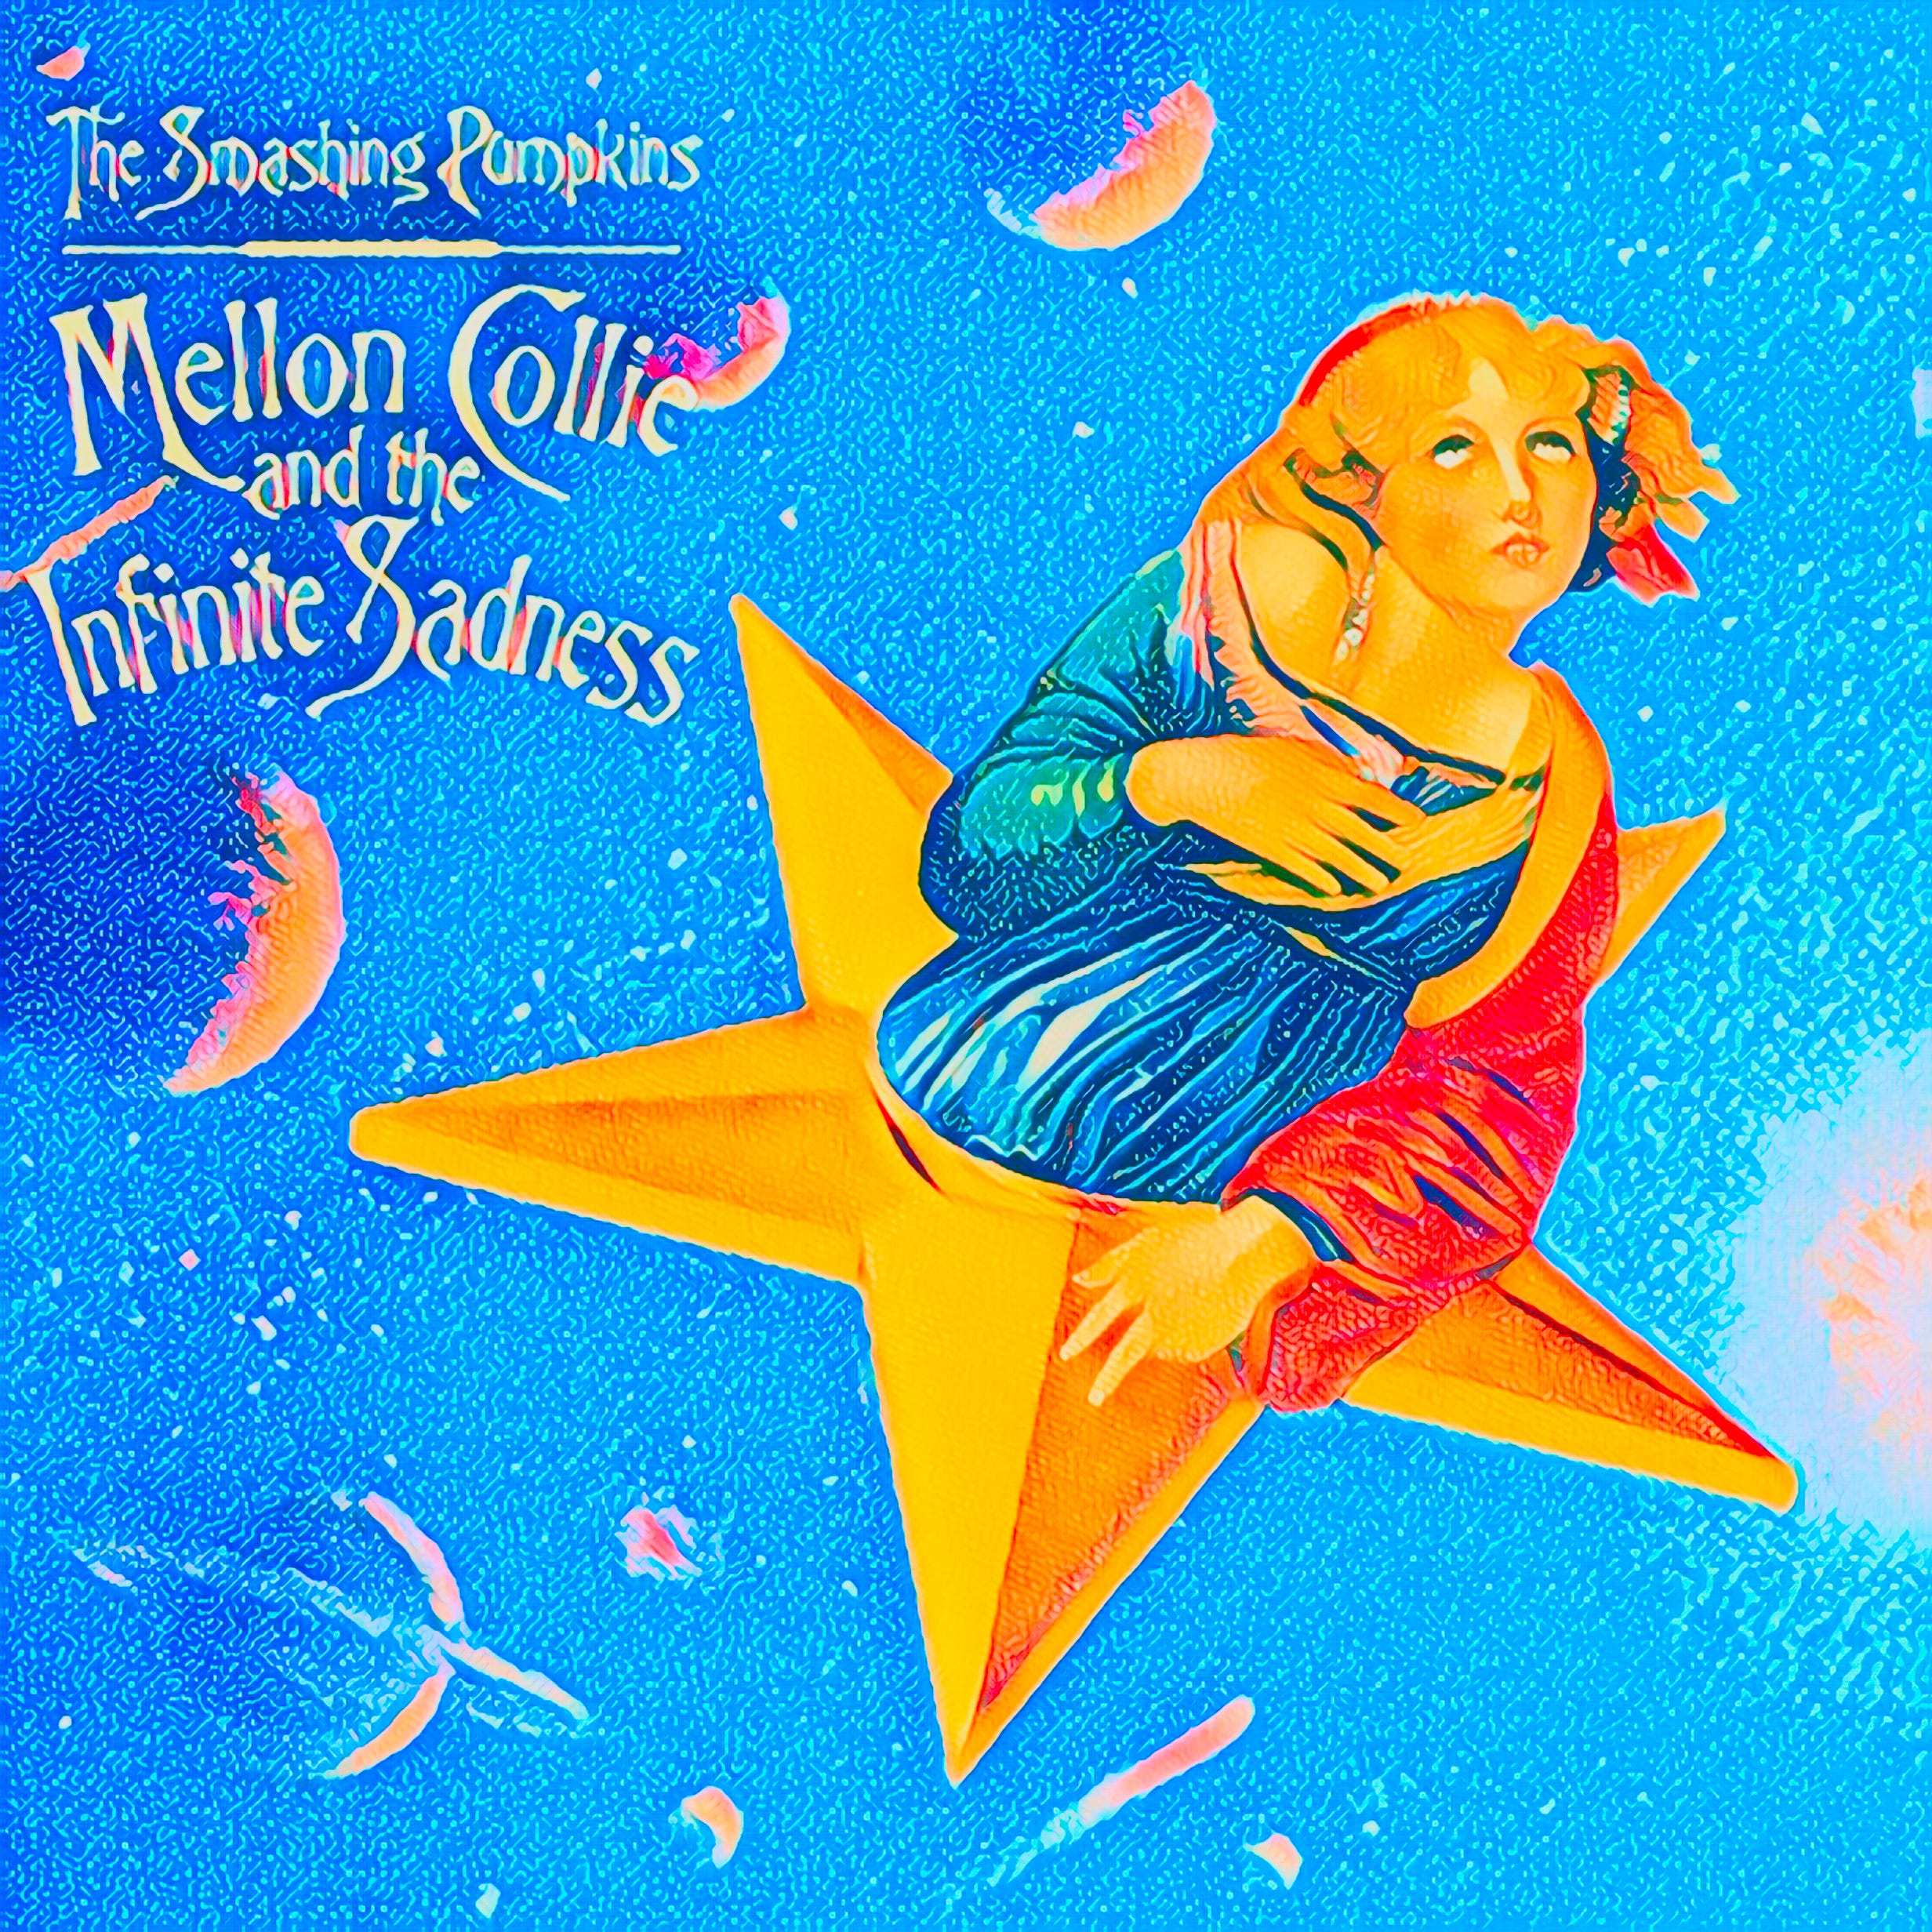 The Smashing Pumpkins - Mellon Collie And The Infinite Sadness